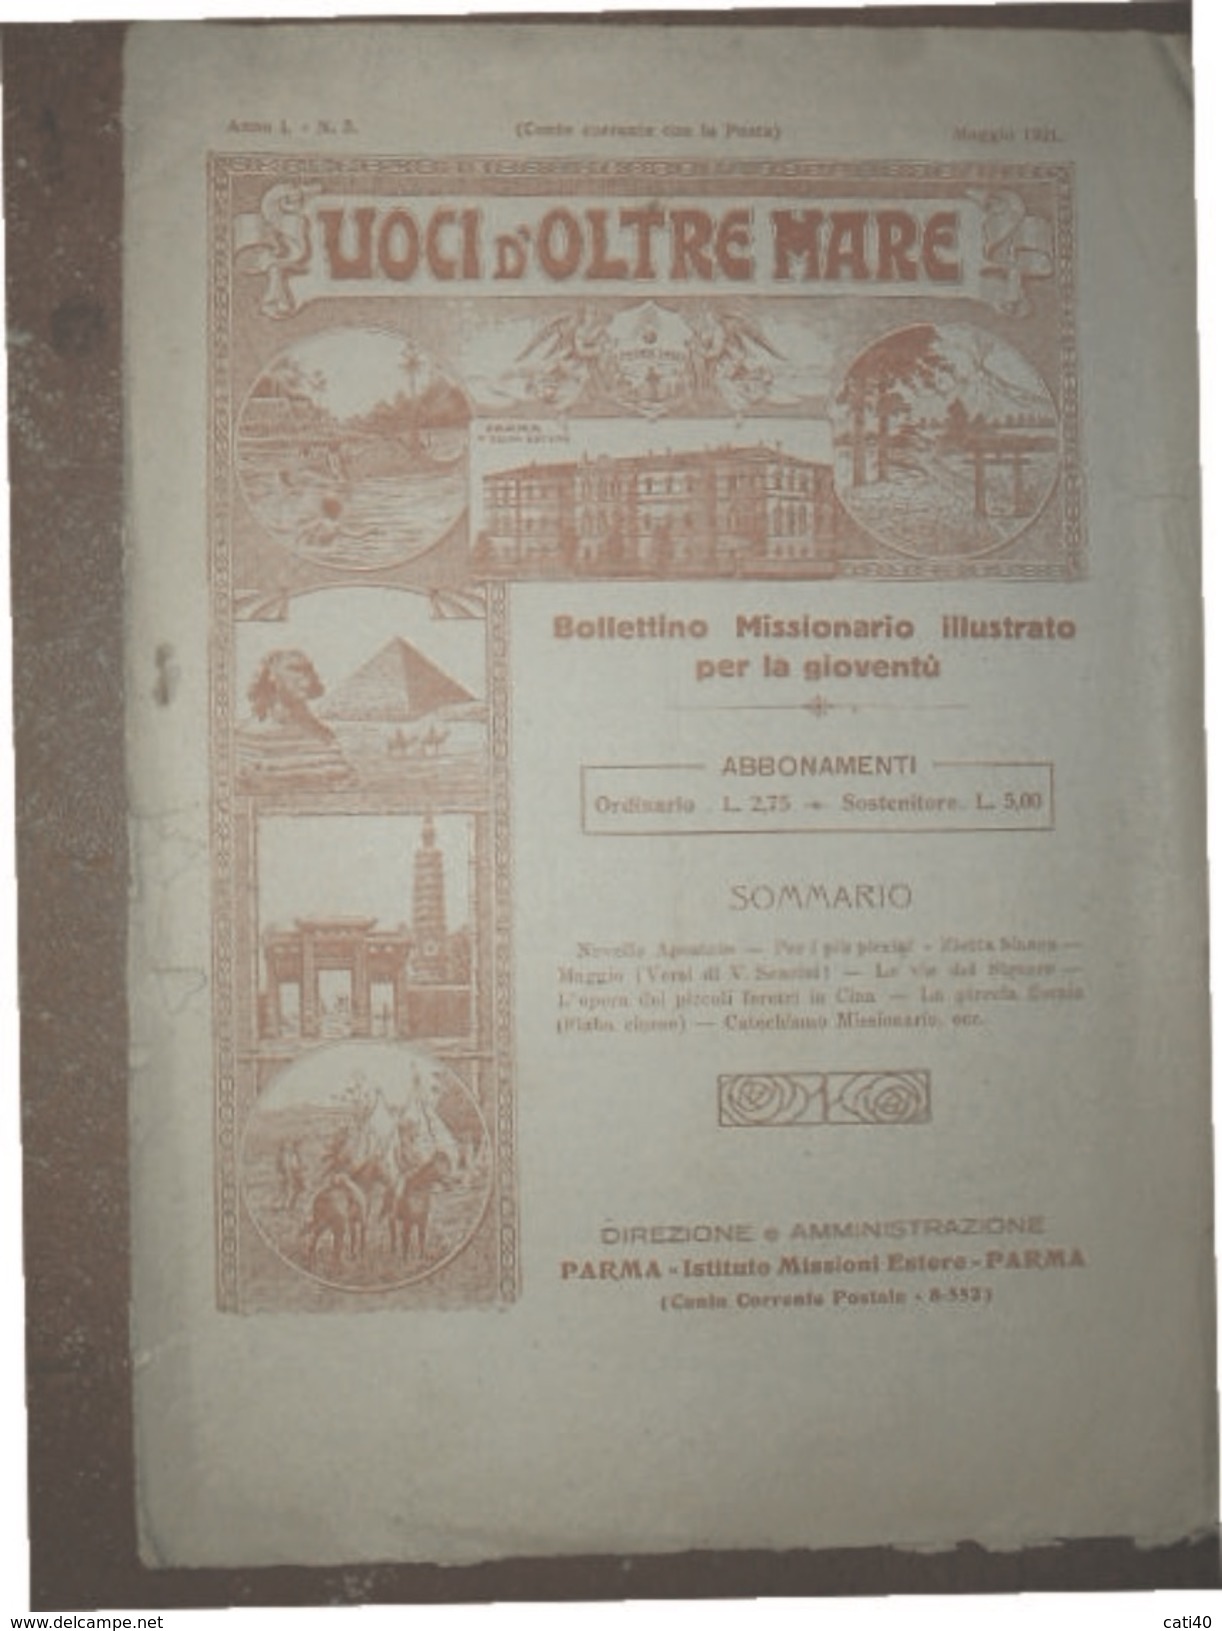 VOCI D'OLTREMARE  BOLLETTINO MISSIONARIO ILLUSTRATO PARMA IST.MISSIONI ESTERE MAGGIO 1921 - Biographie